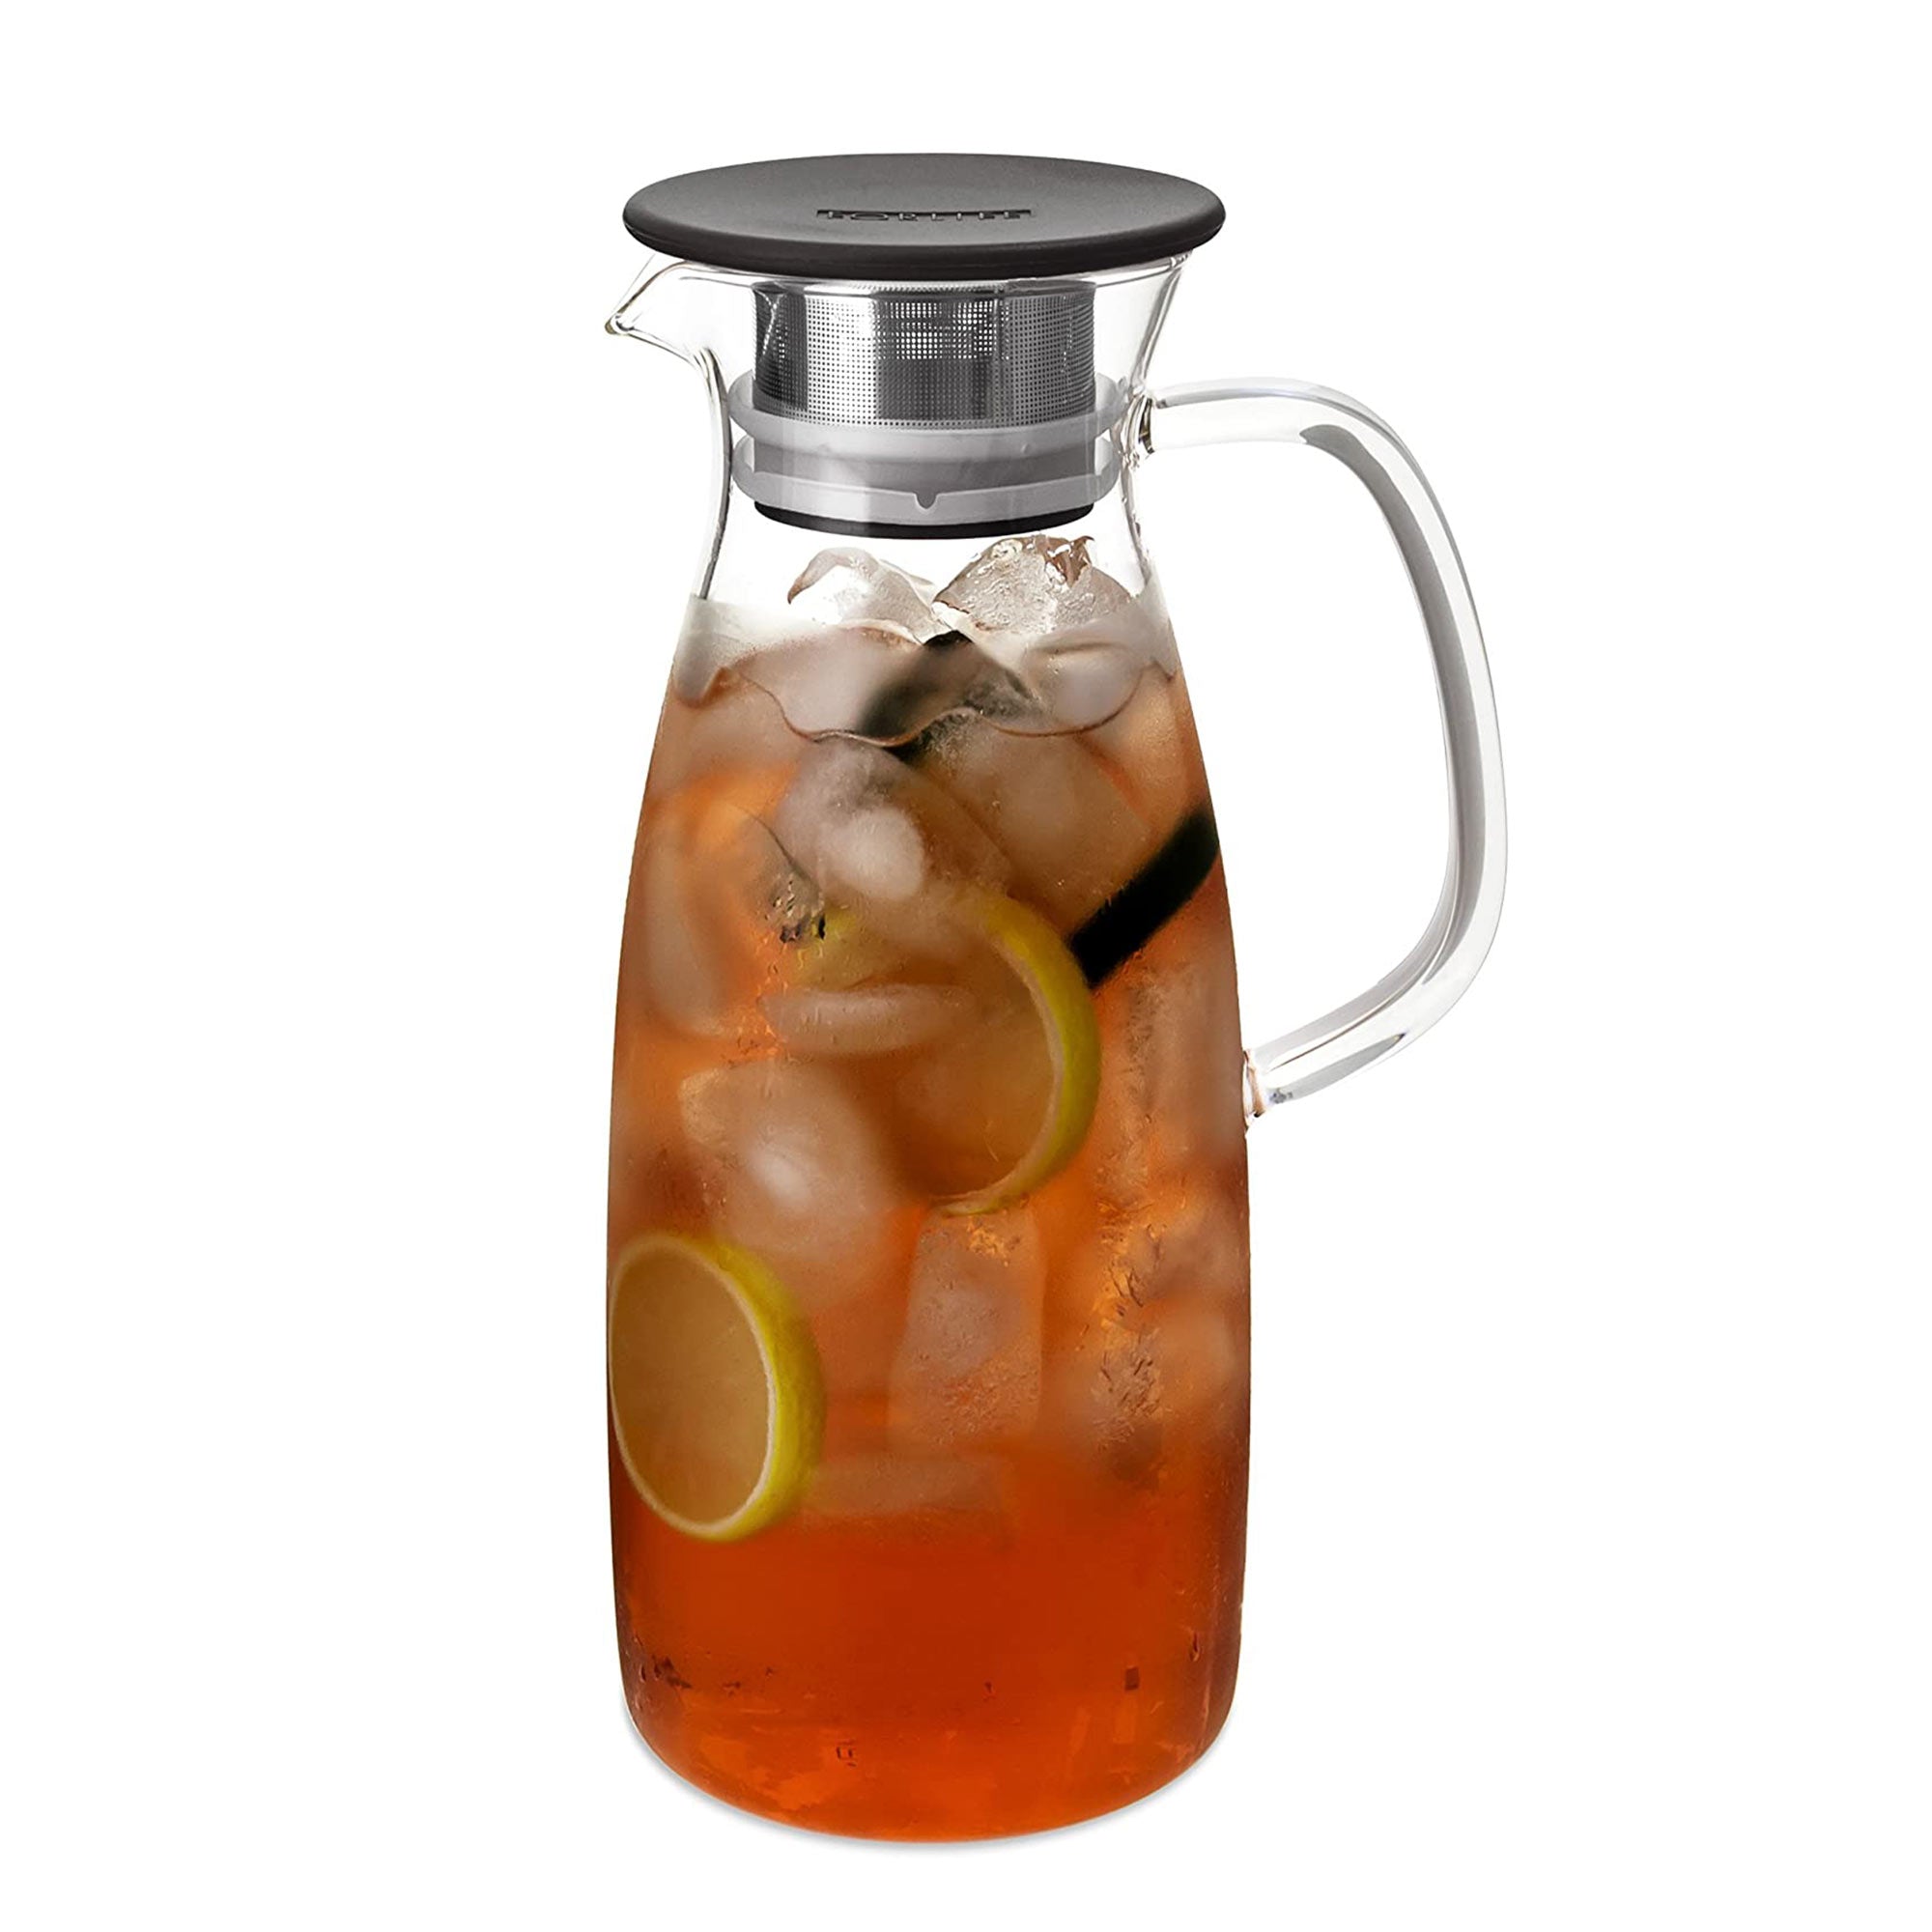 https://chicagoteahouse.com/cdn/shop/products/874118005703_fortlife-mist-glass-infuser-cold-brew-tea-jug.jpg?v=1680747862